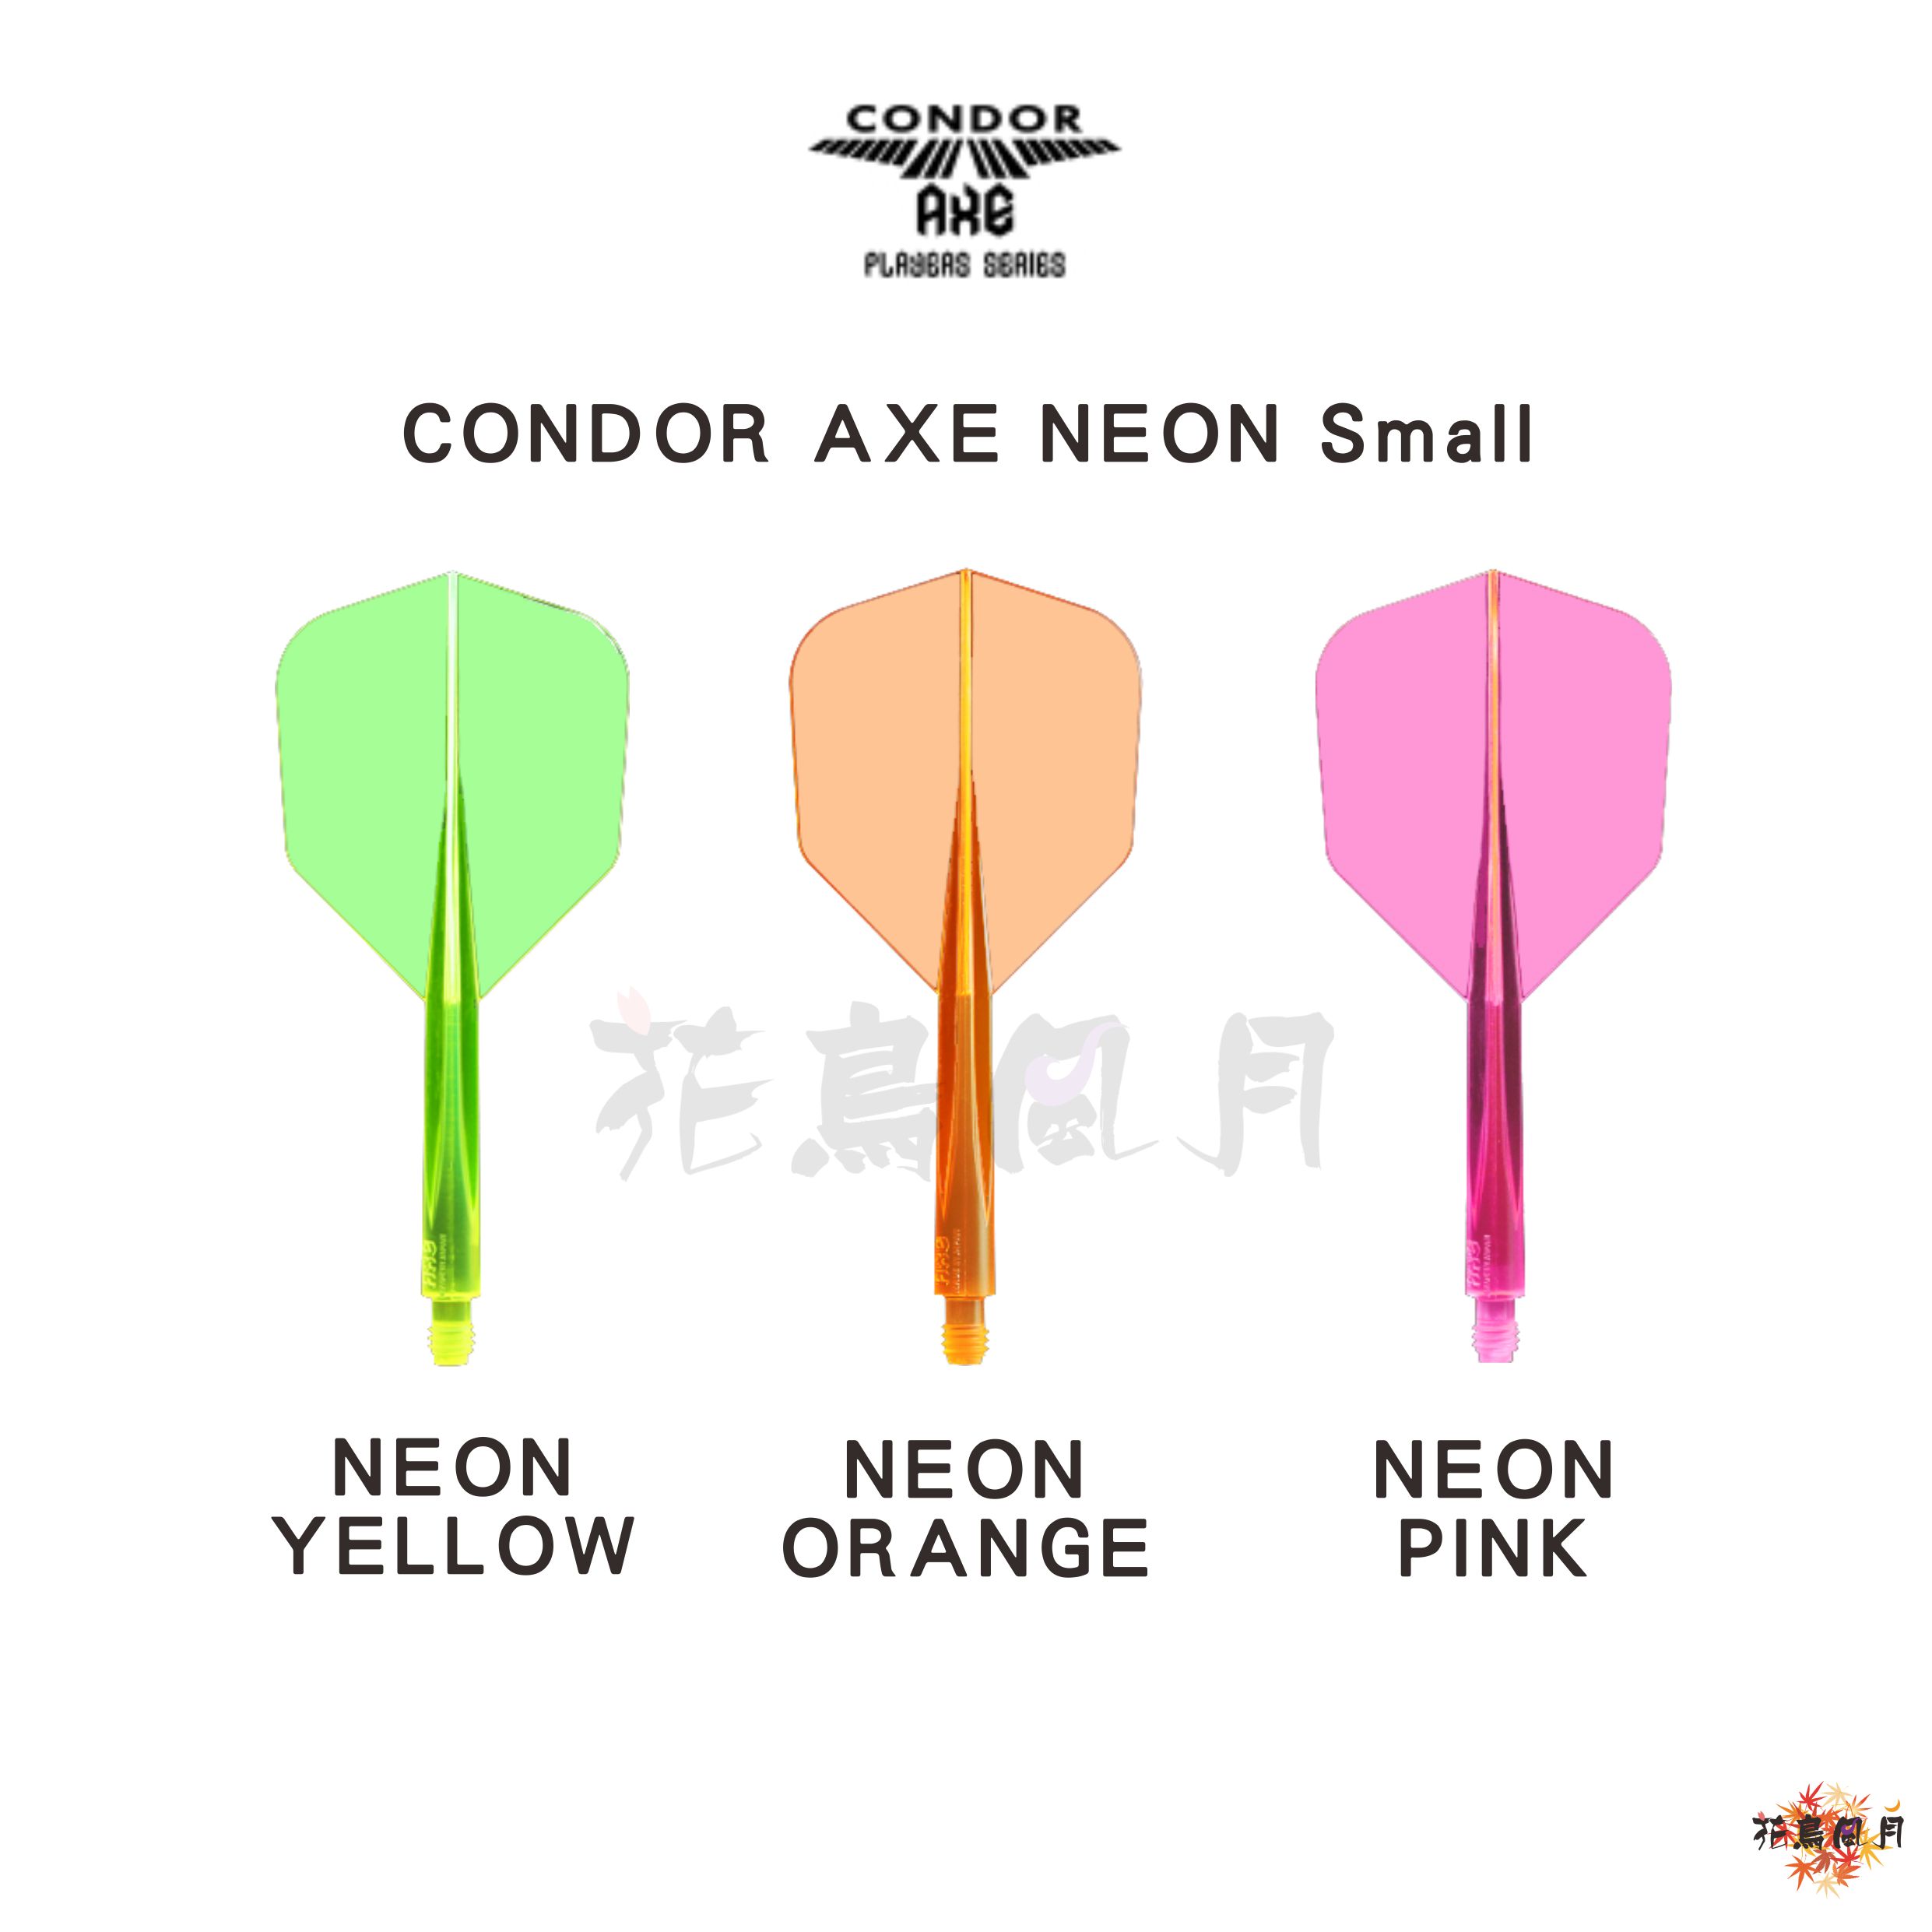 CONDOR-AXE-NEON-Small